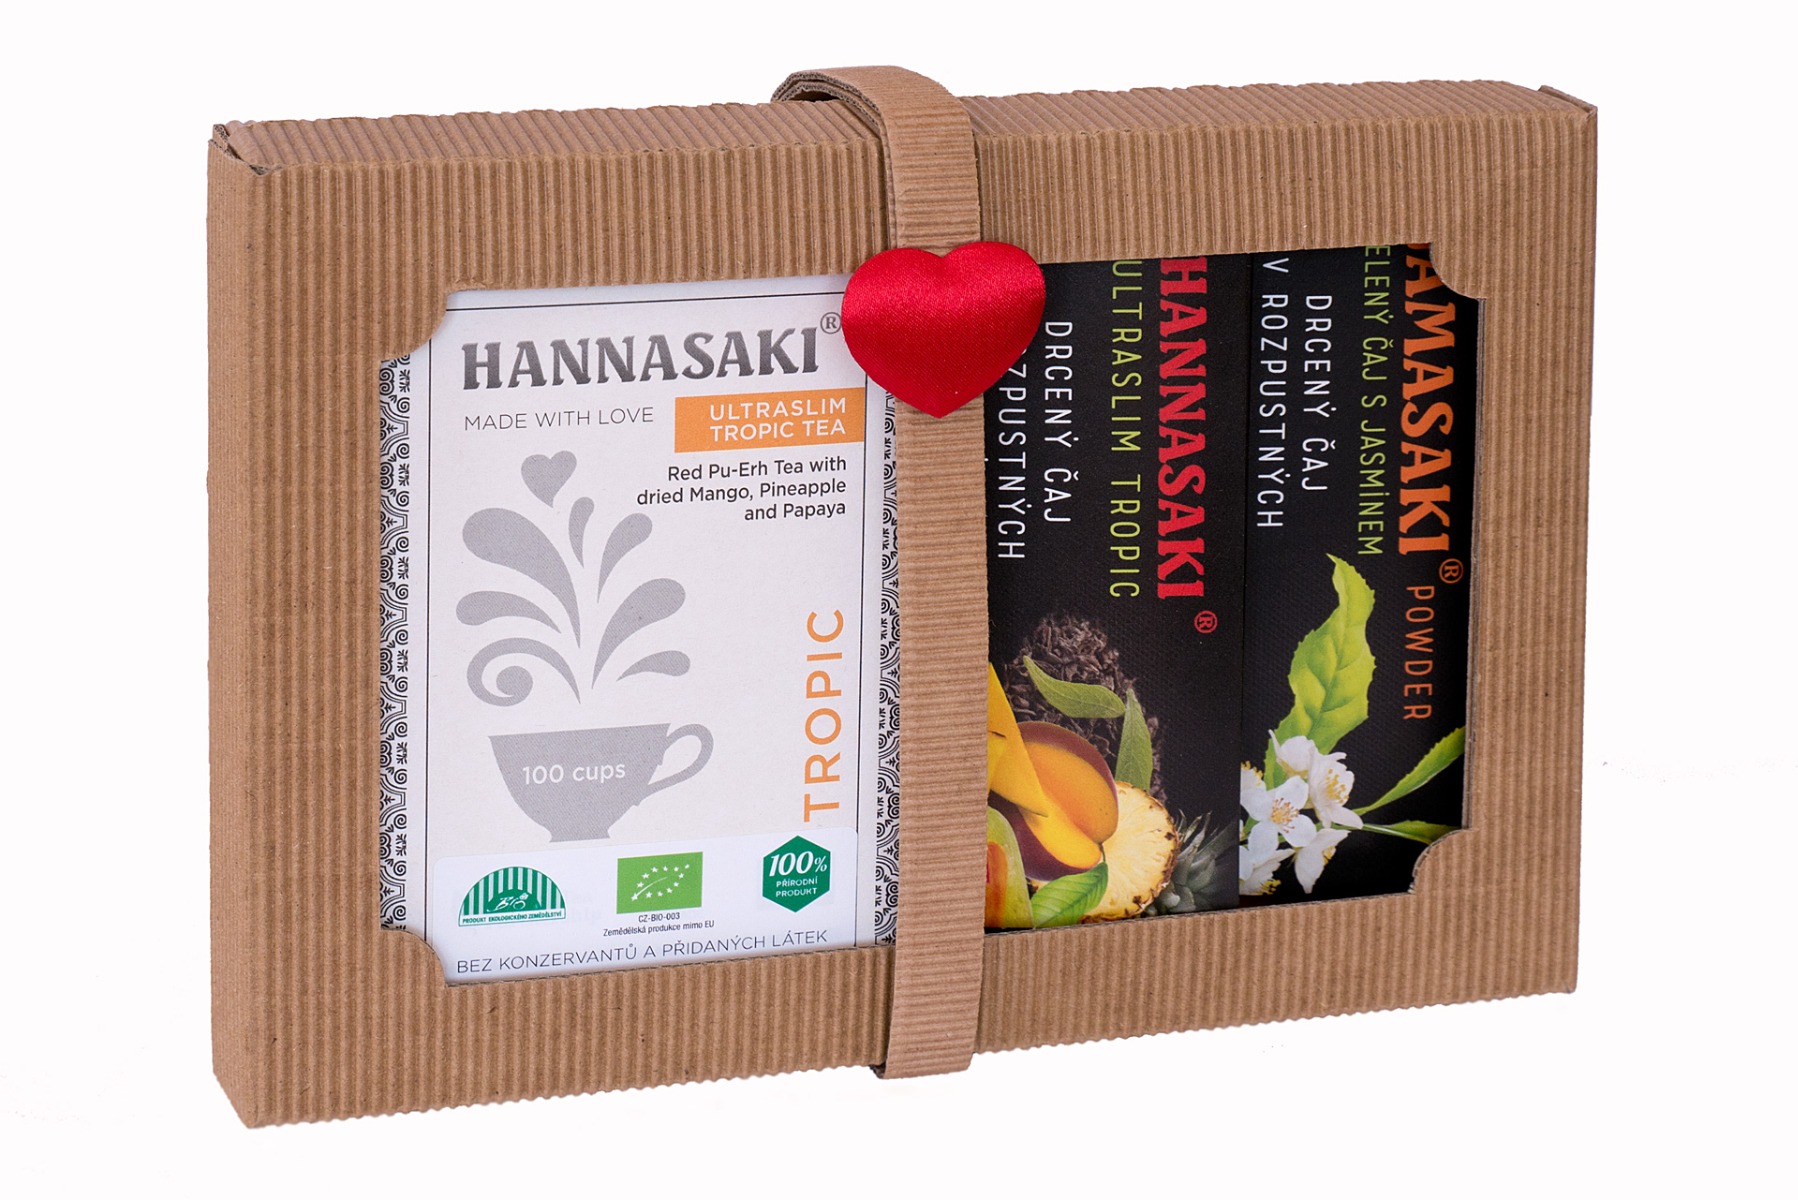 Hannasaki V pohodě doma i na cestách set BIO čajů 70 g + cestovní balení Hannasaki